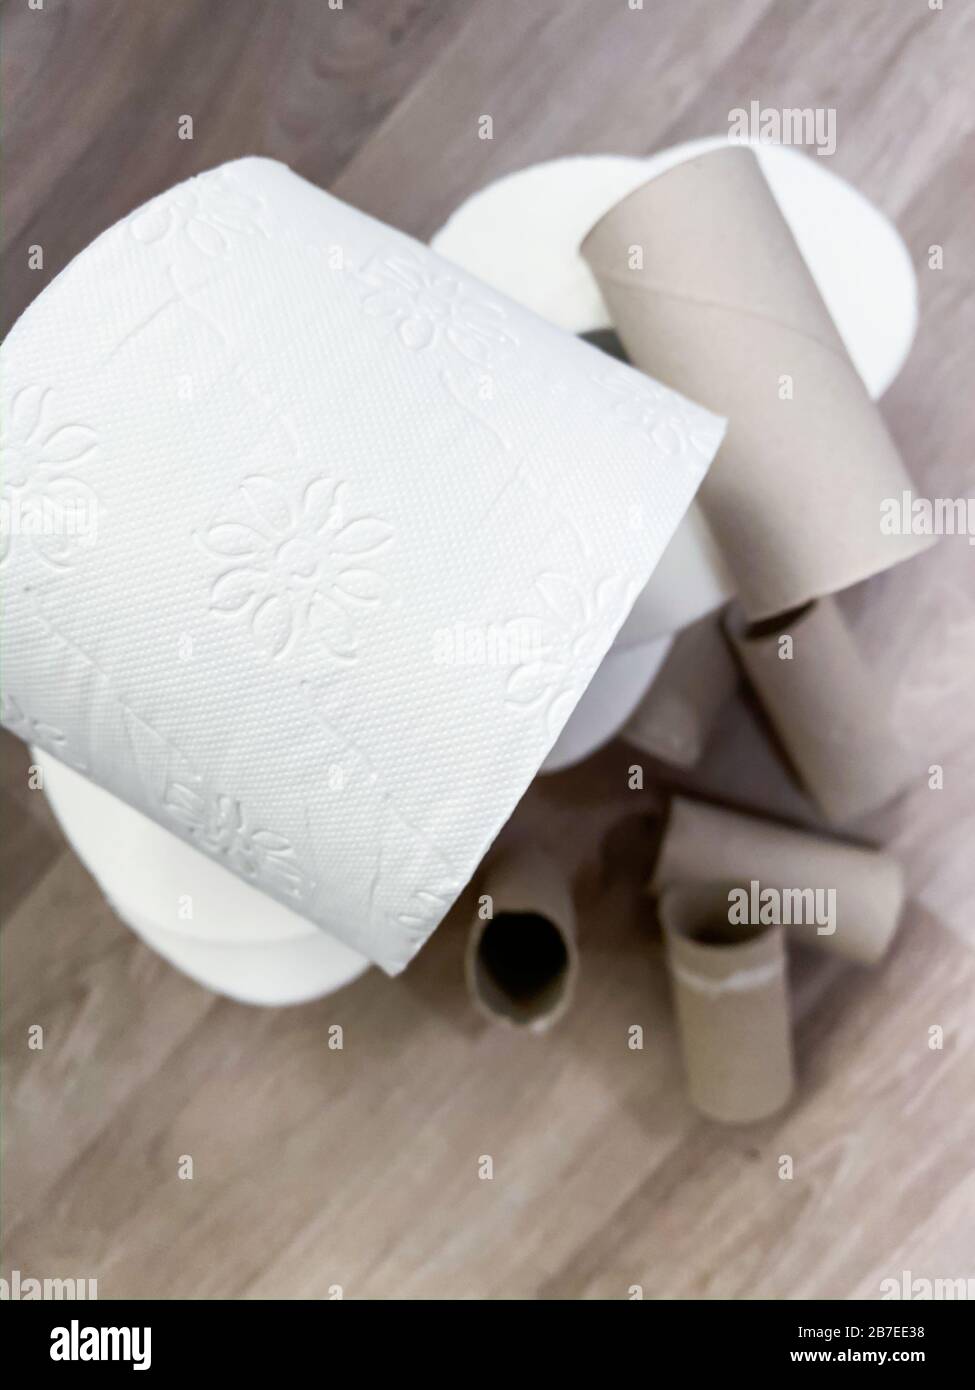 Piles de rouleaux de papier toilette blanc vides et pleins Banque D'Images